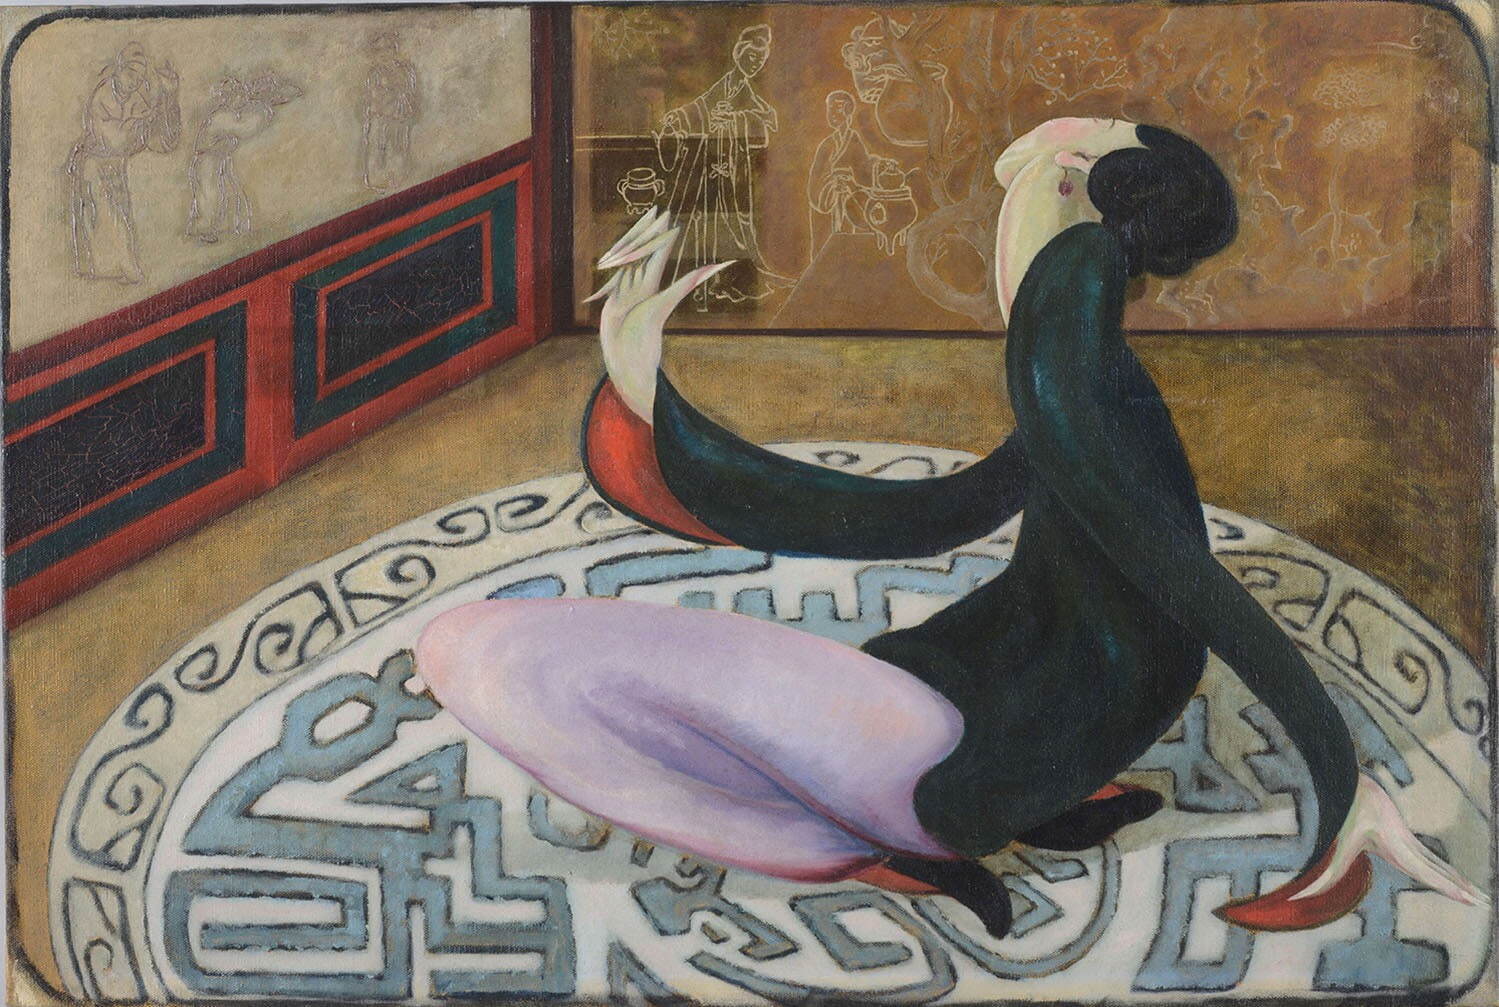 久米民十郎 《支那の踊り》 1920年
油彩、カンヴァス 永青文庫